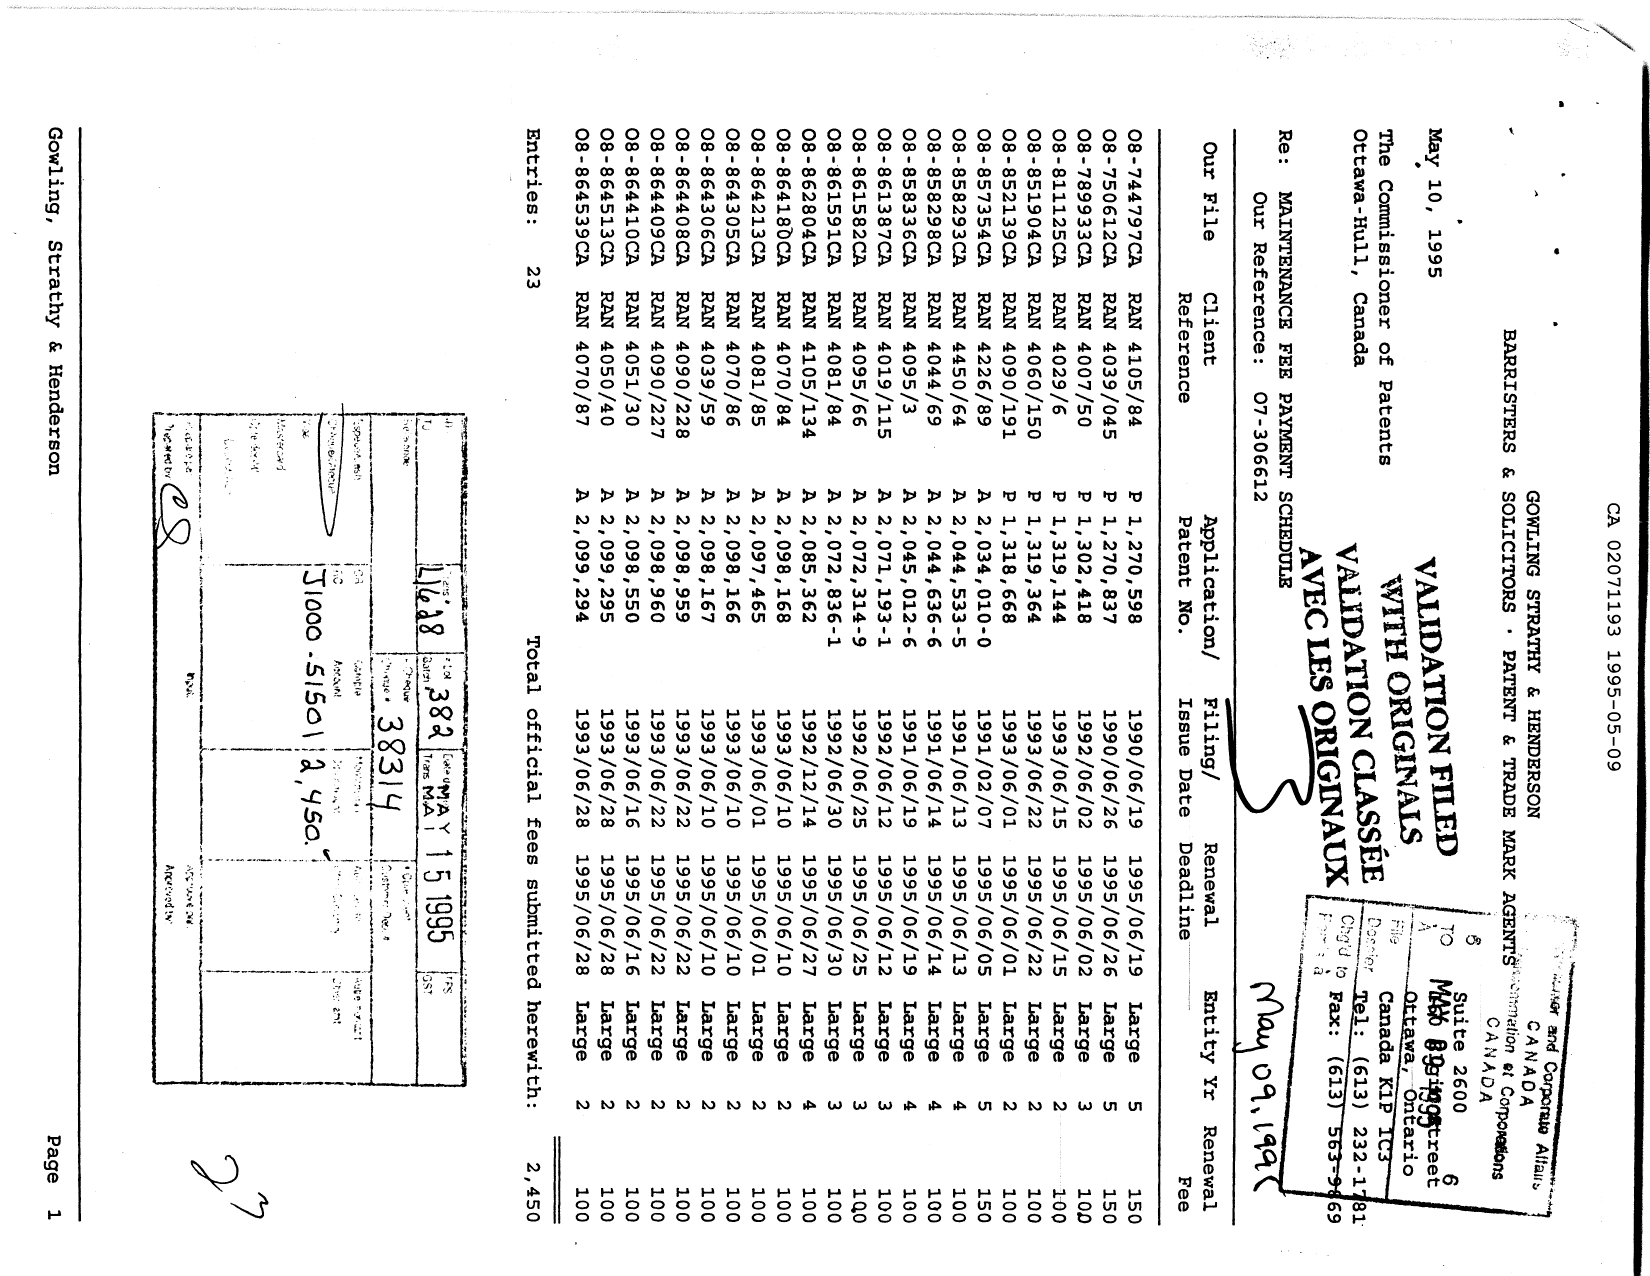 Document de brevet canadien 2071193. Taxes 19950509. Image 1 de 1